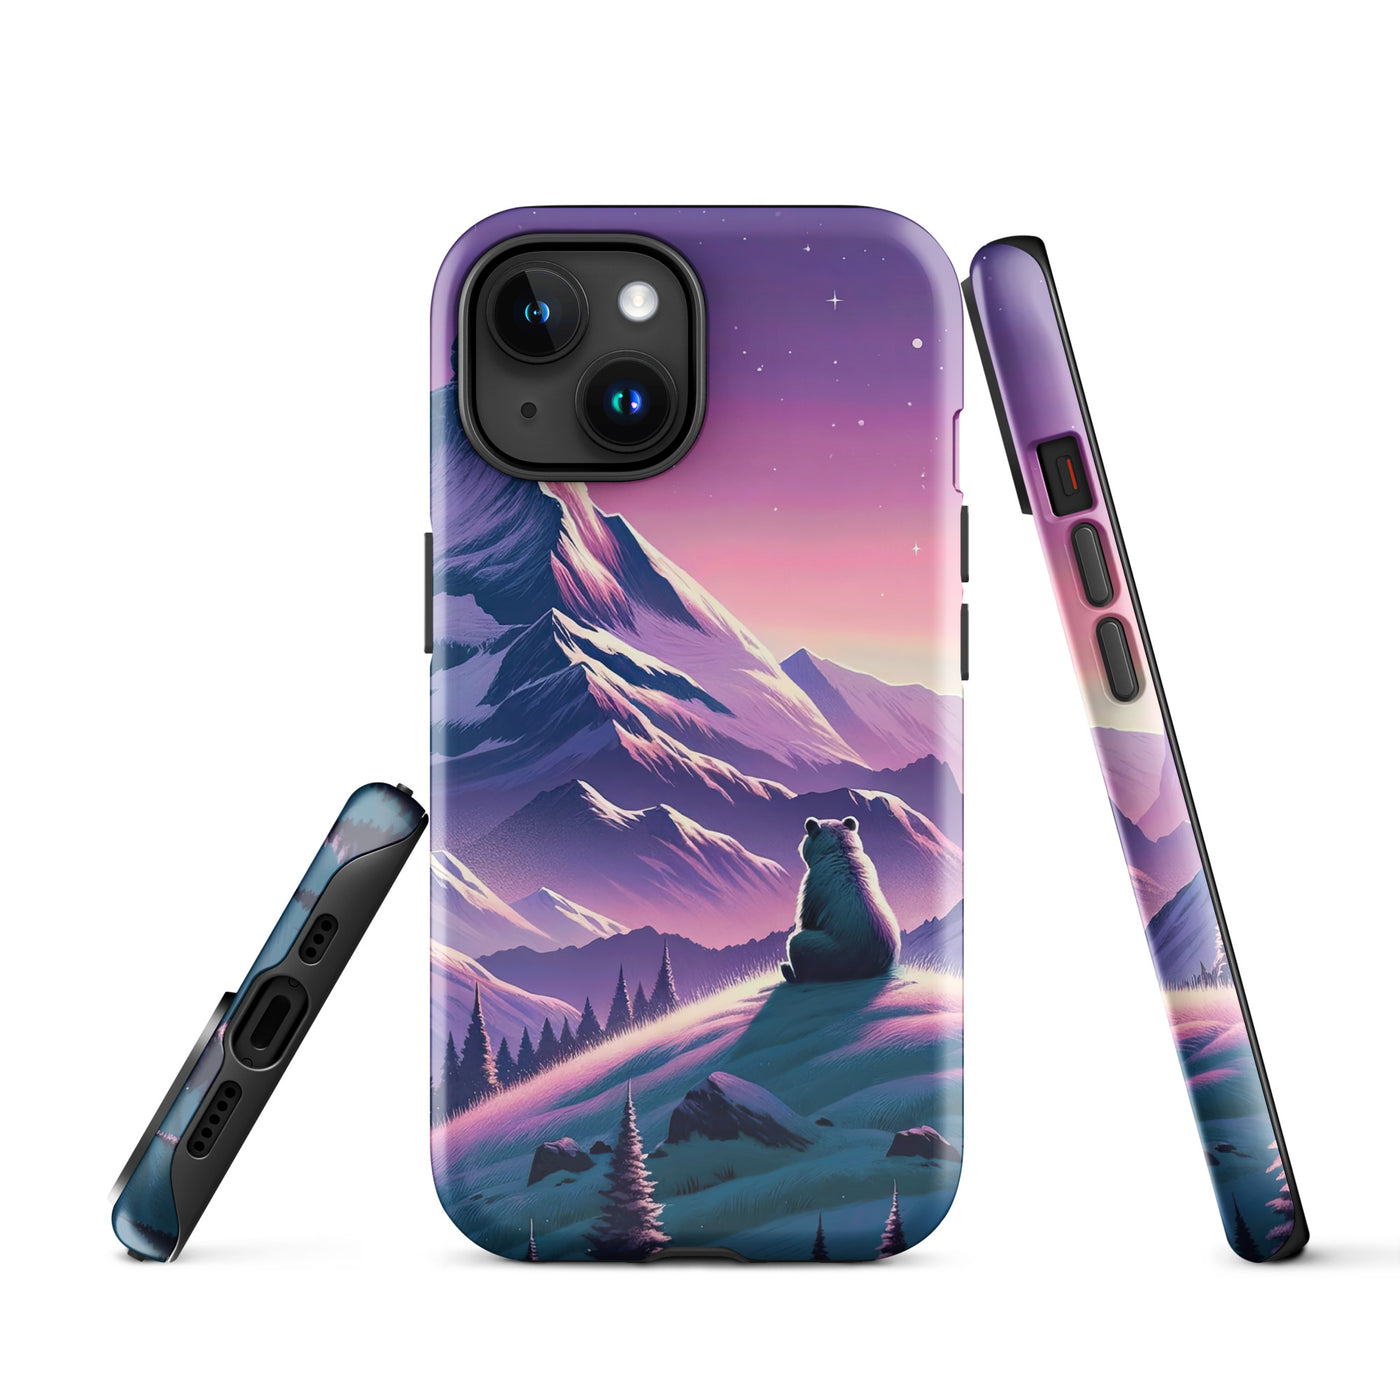 Bezaubernder Alpenabend mit Bär, lavendel-rosafarbener Himmel (AN) - iPhone Schutzhülle (robust) xxx yyy zzz iPhone 15